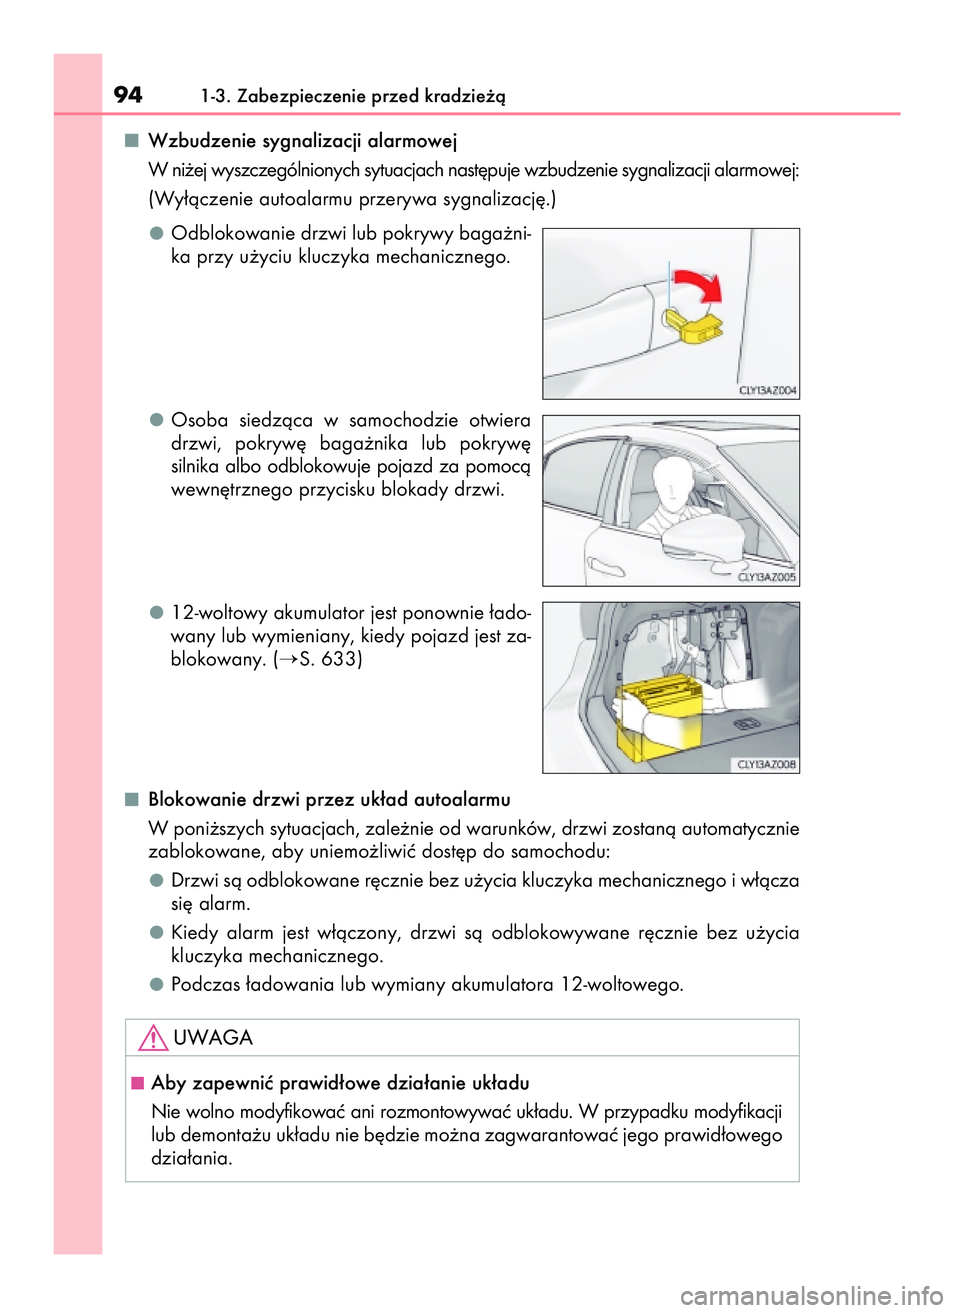 Lexus IS300h 2017  Instrukcja Obsługi (in Polish) Wzbudzenie sygnalizacji alarmowej
W ni˝ej wyszczególnionych sytuacjach nast´puje wzbudzenie sygnalizacji alarmowej:
(Wy∏àczenie autoalarmu przerywa sygnalizacj´.)
Odblokowanie drzwi lub pokrywy